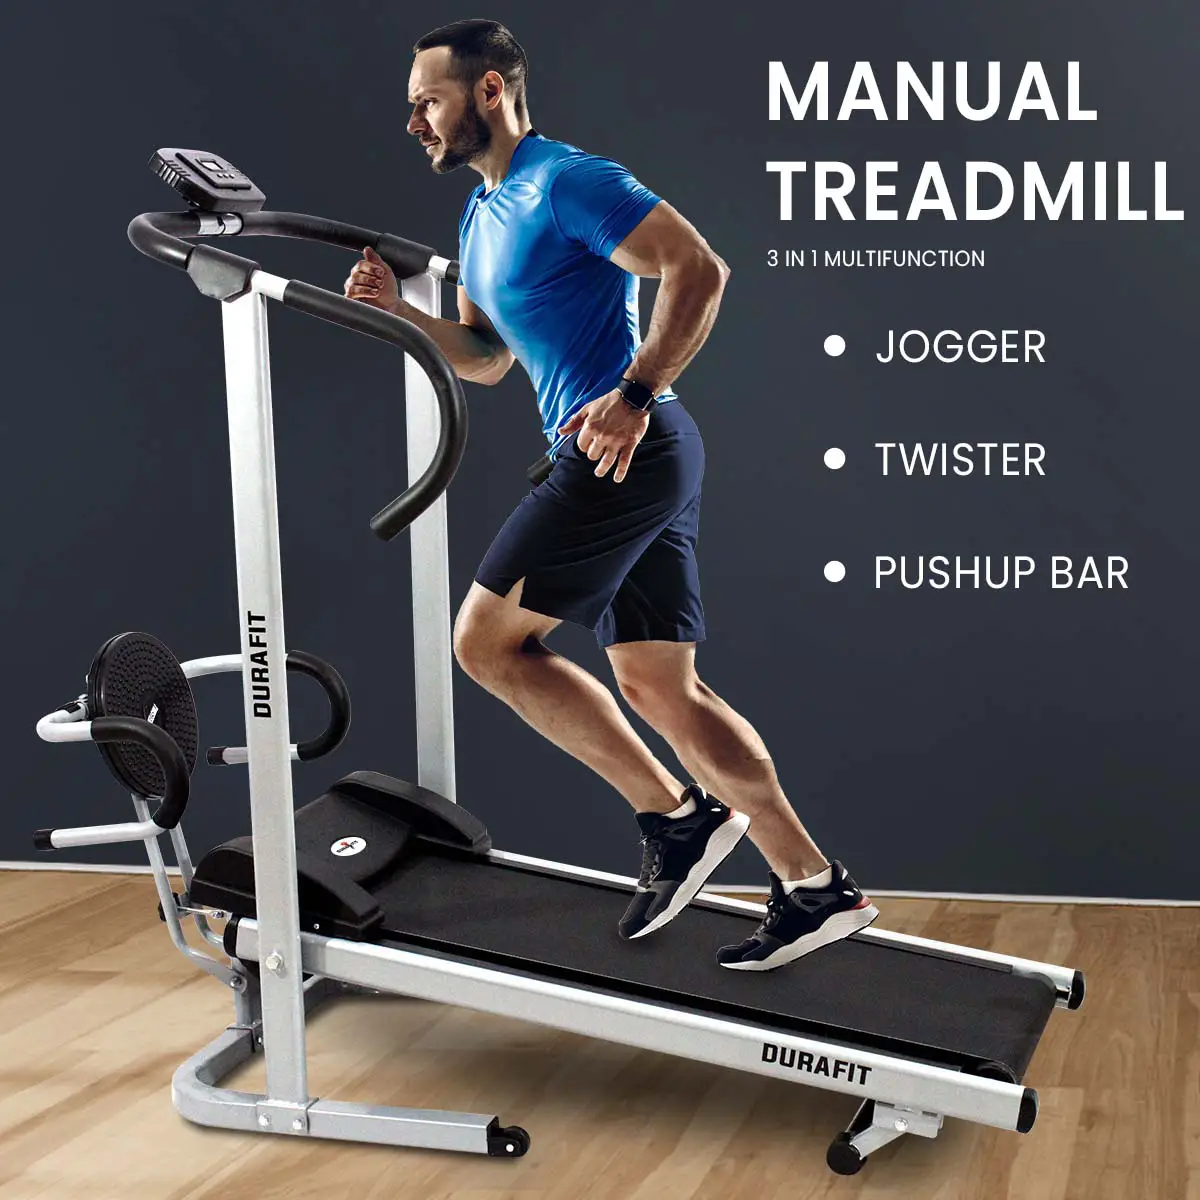 Durafit Manual Treadmill Hmtt1 3 in 1 multifunction